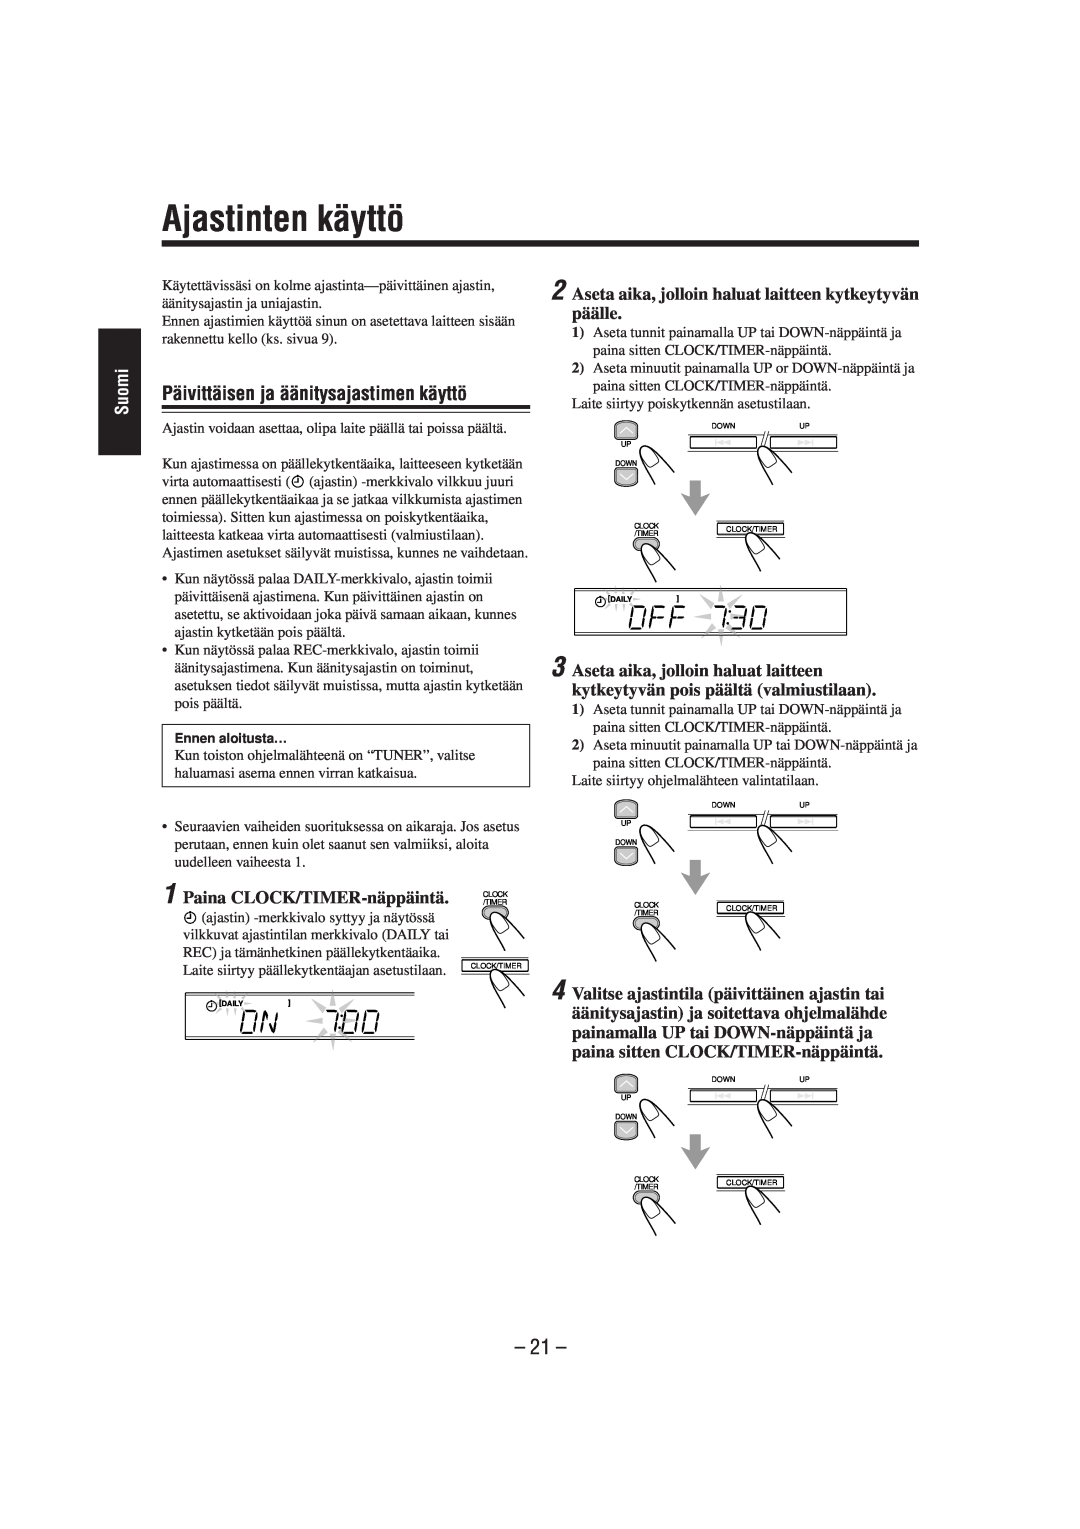 JVC CA-UXL40R, UX-L40R Ajastinten käyttö, Päivittäisen ja äänitysajastimen käyttö, 21, Suomi, Paina CLOCK/TIMER-näppäintä 